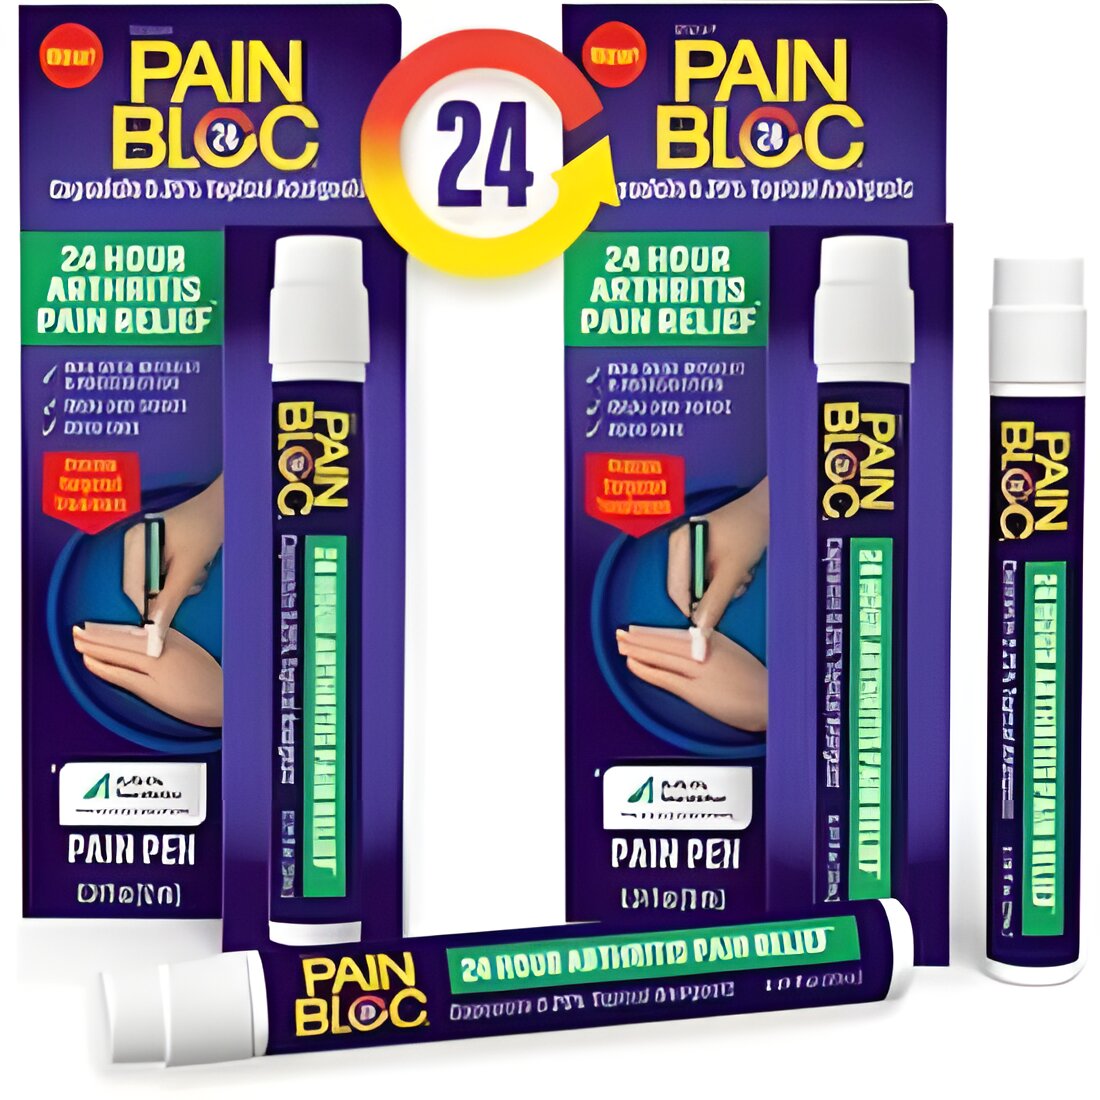 Free Painbloc24 Flexi-Stretch Pain Tape